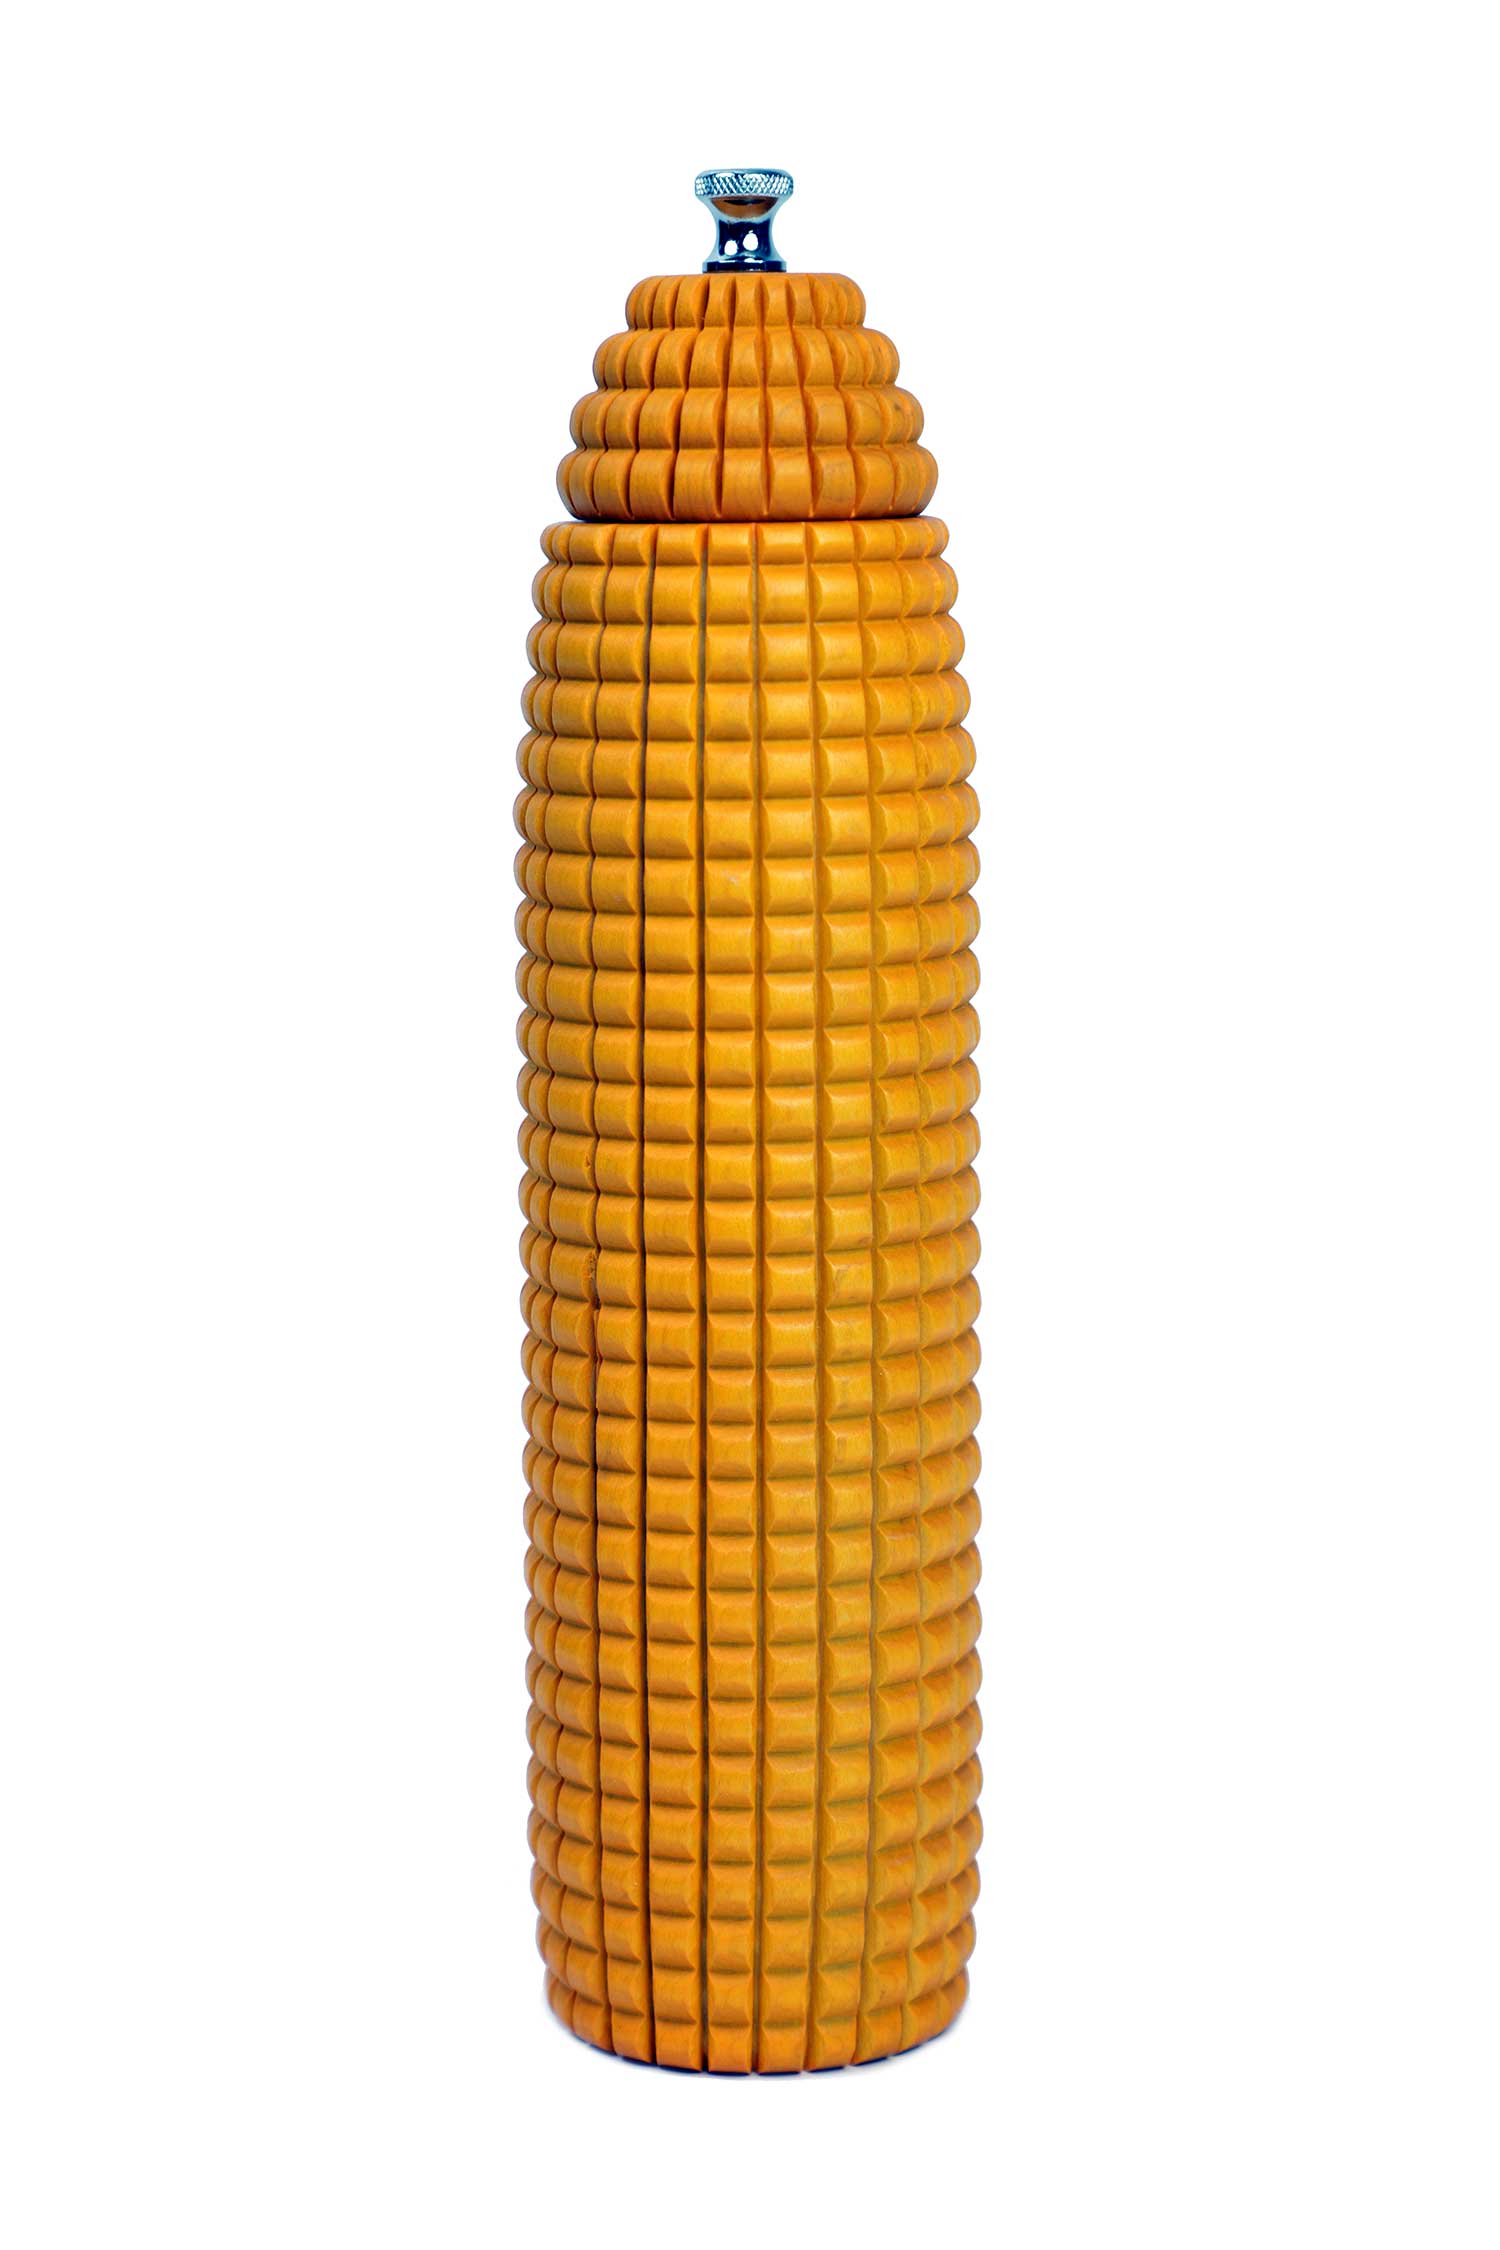 120 Corn Mill